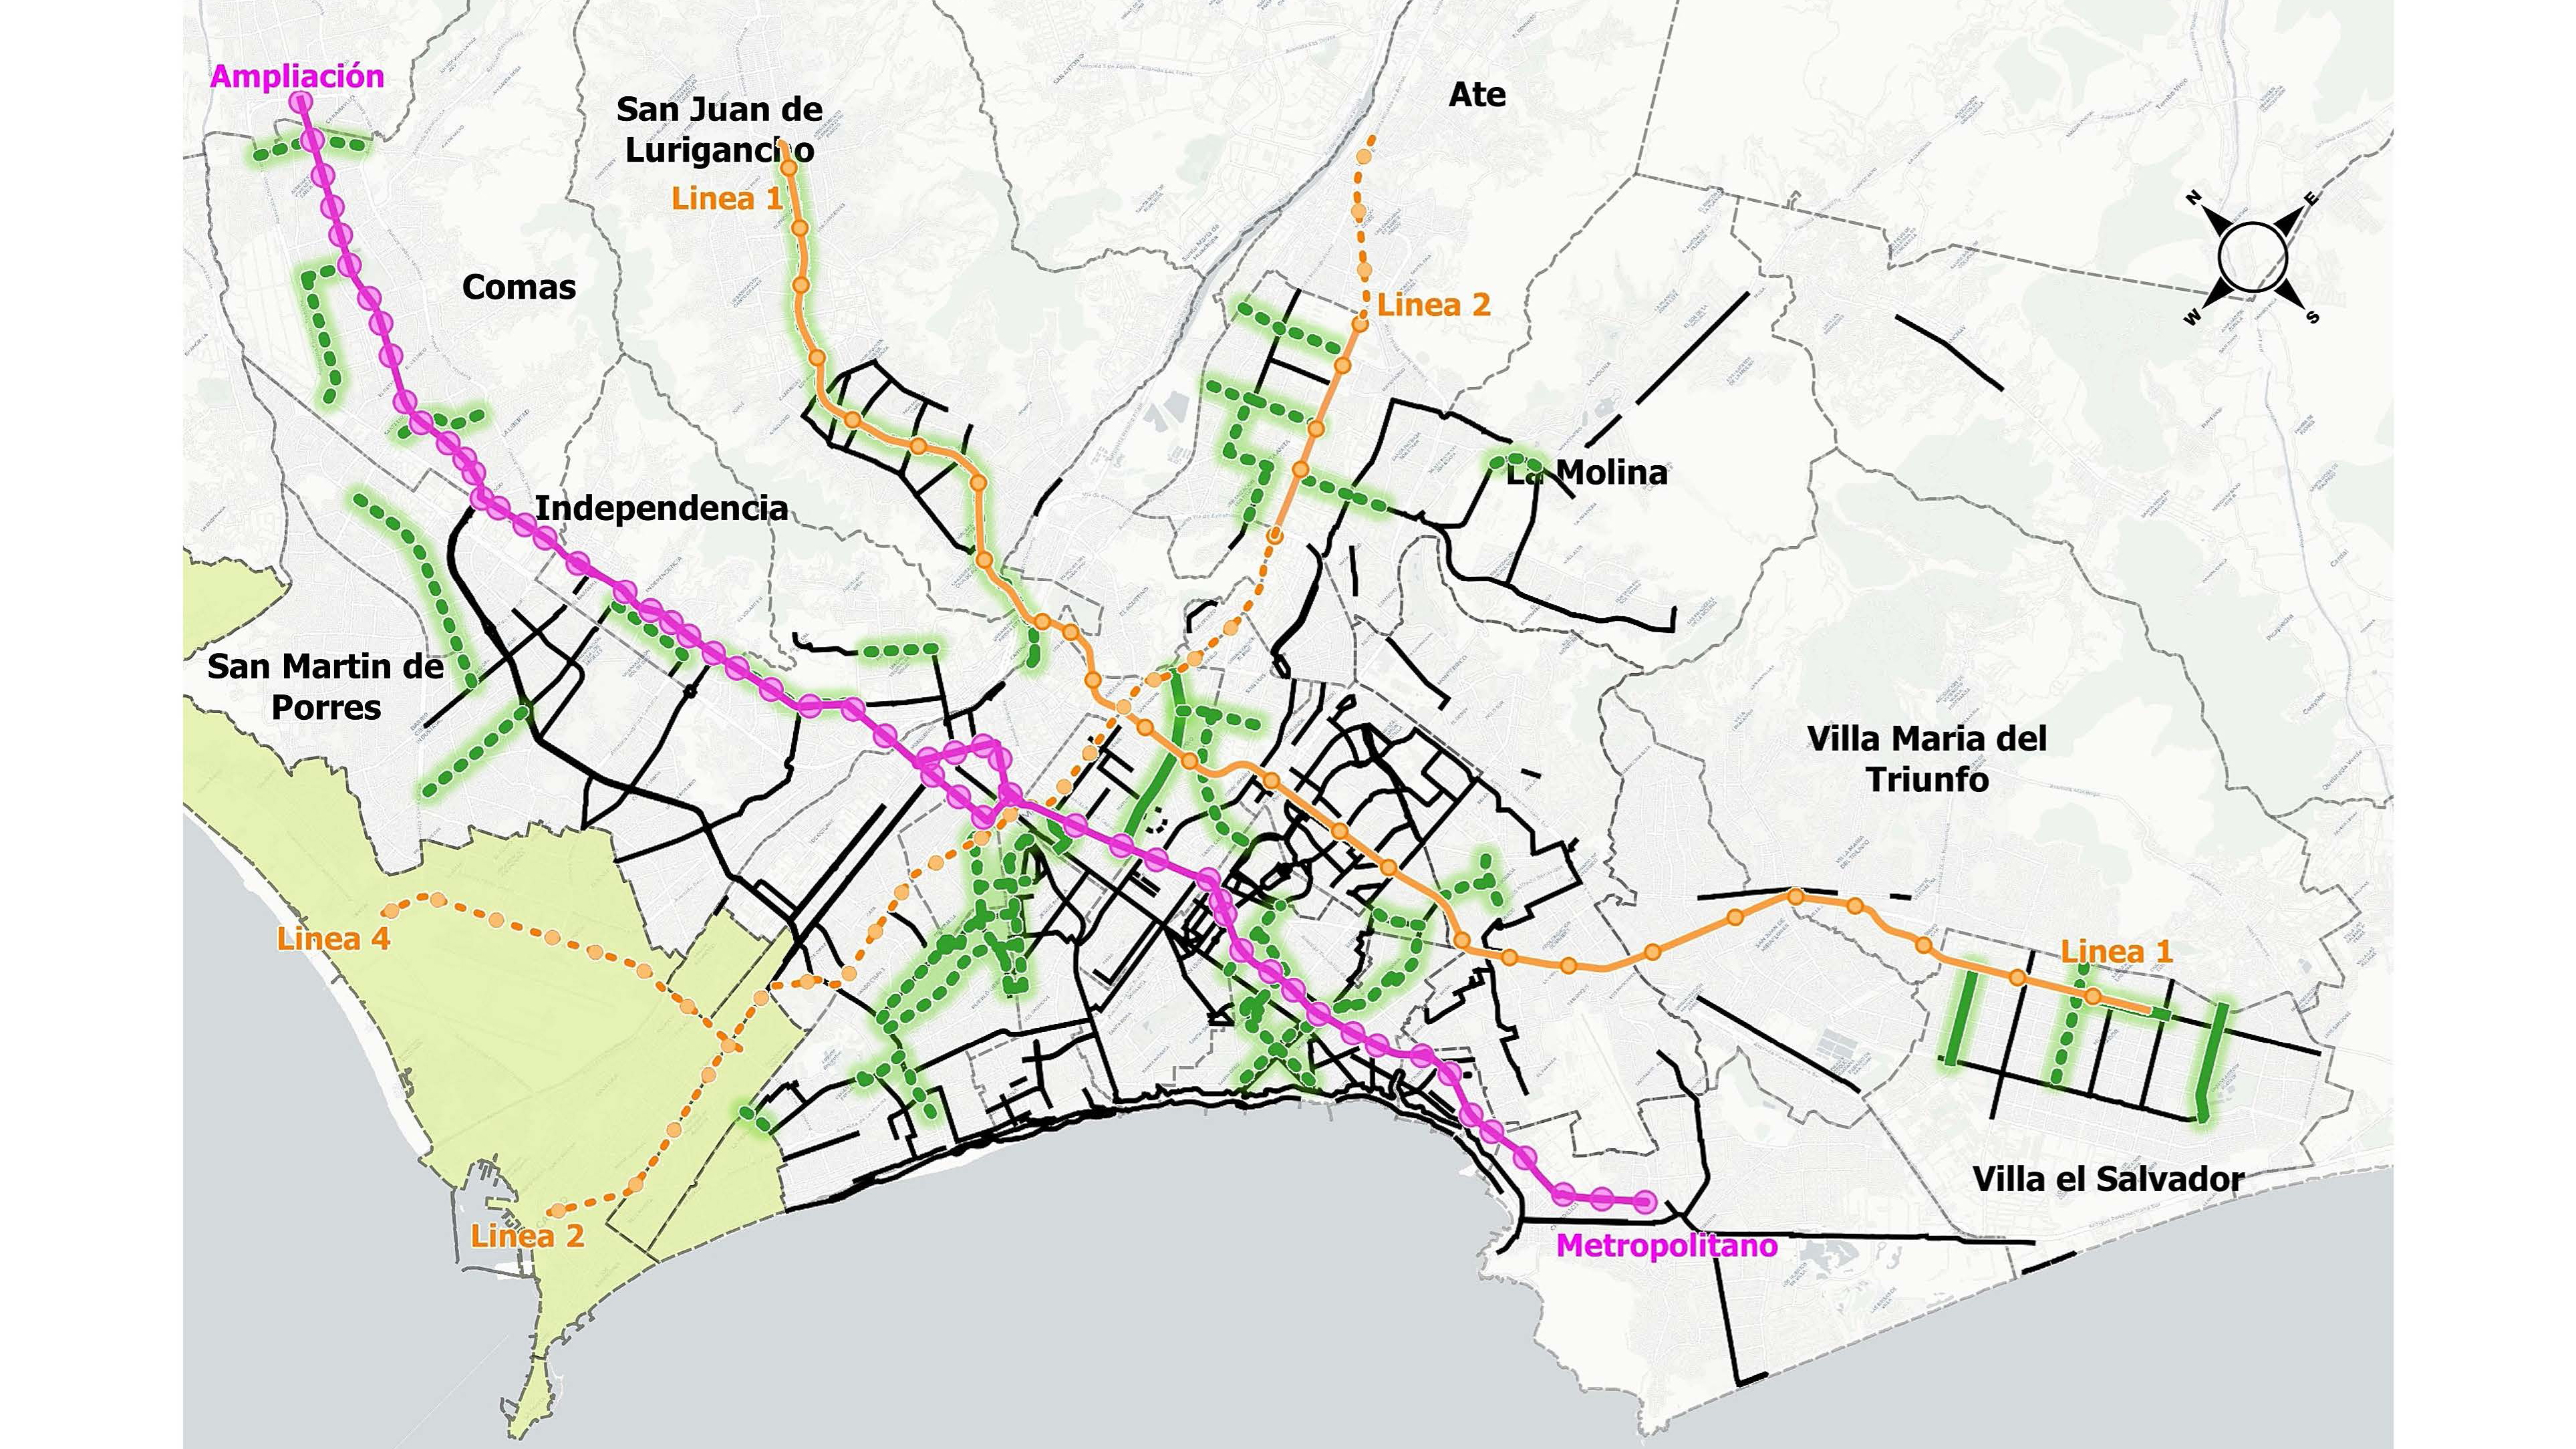 Bestehendes Radwegenetz in Lima (schwarz), mit deutscher Unterstützung fertiggestellte und geplante Radwege (grün/grün gestrichelt), fertige und geplante Metrolinien (gelb/gelb gestrichelt), sowie die Hauptroute des Metropolitano-Busses (lila)